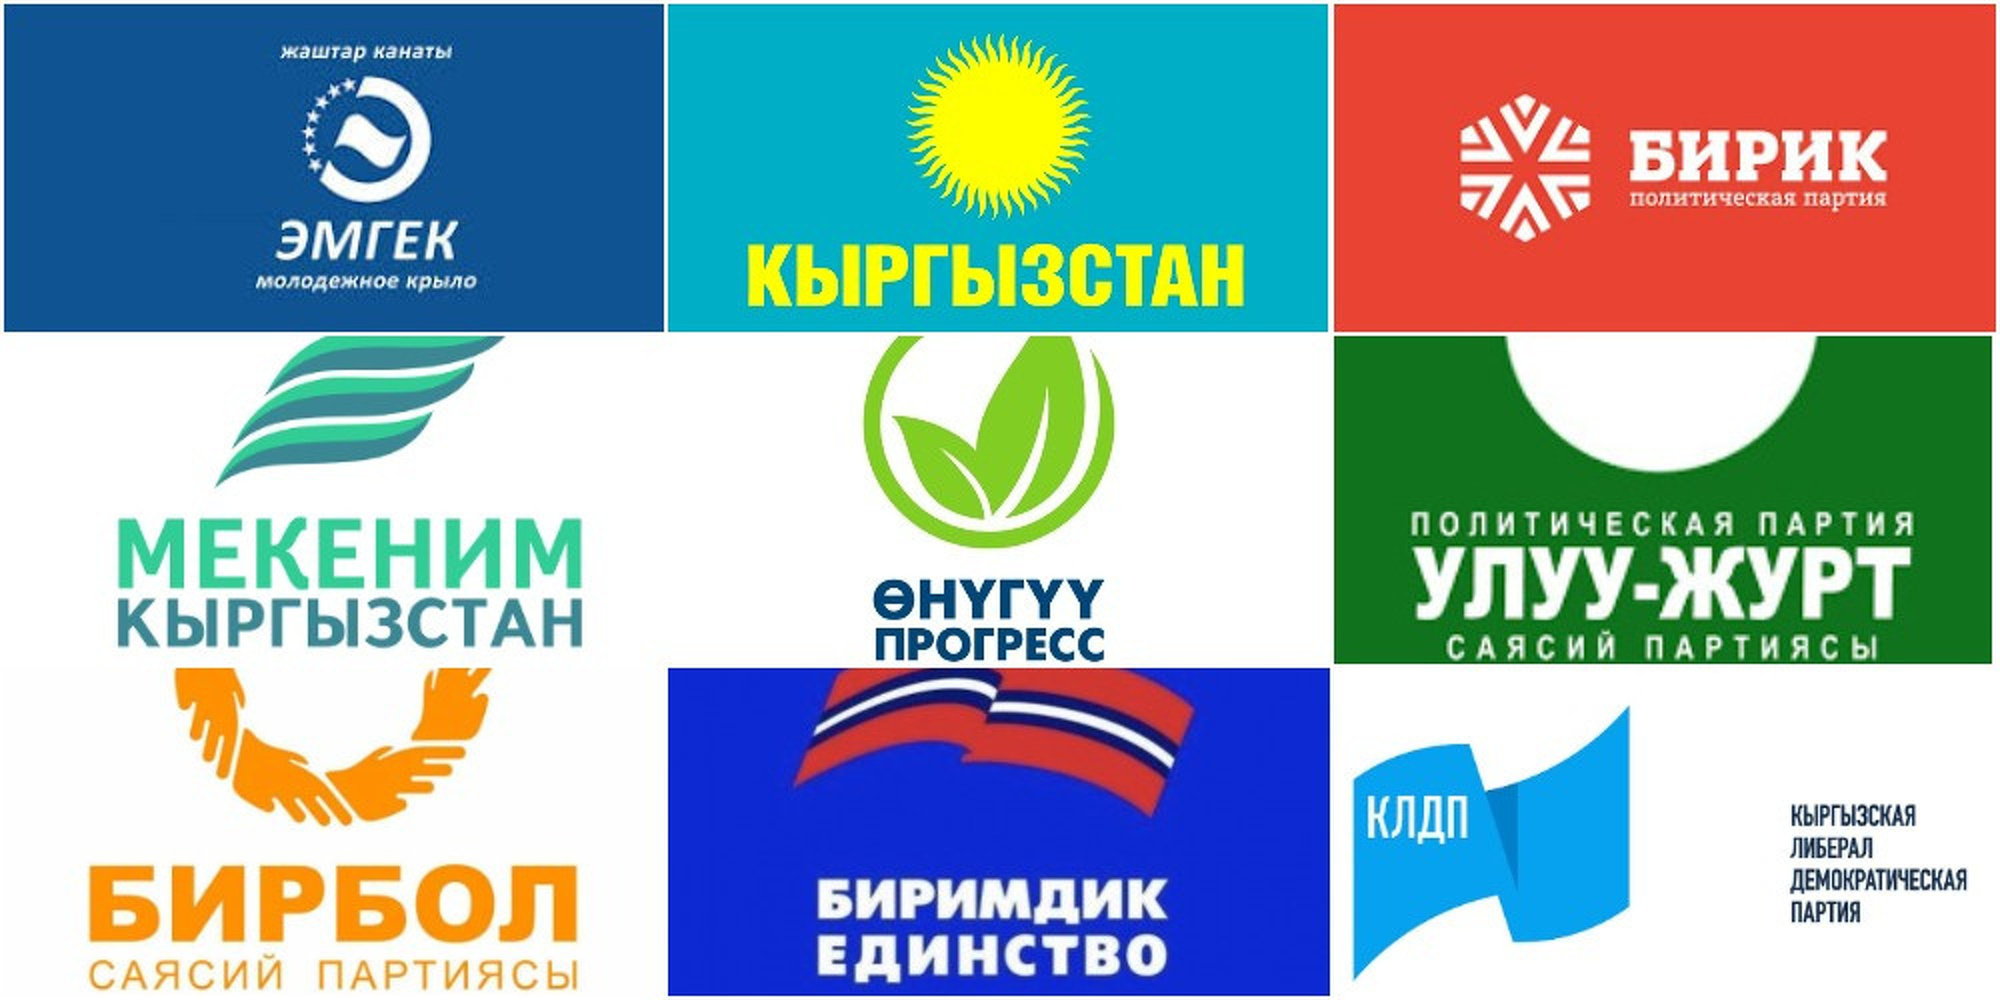 Список – В Кыргызстане зарегистрировано 263 политические партии — Today.kg